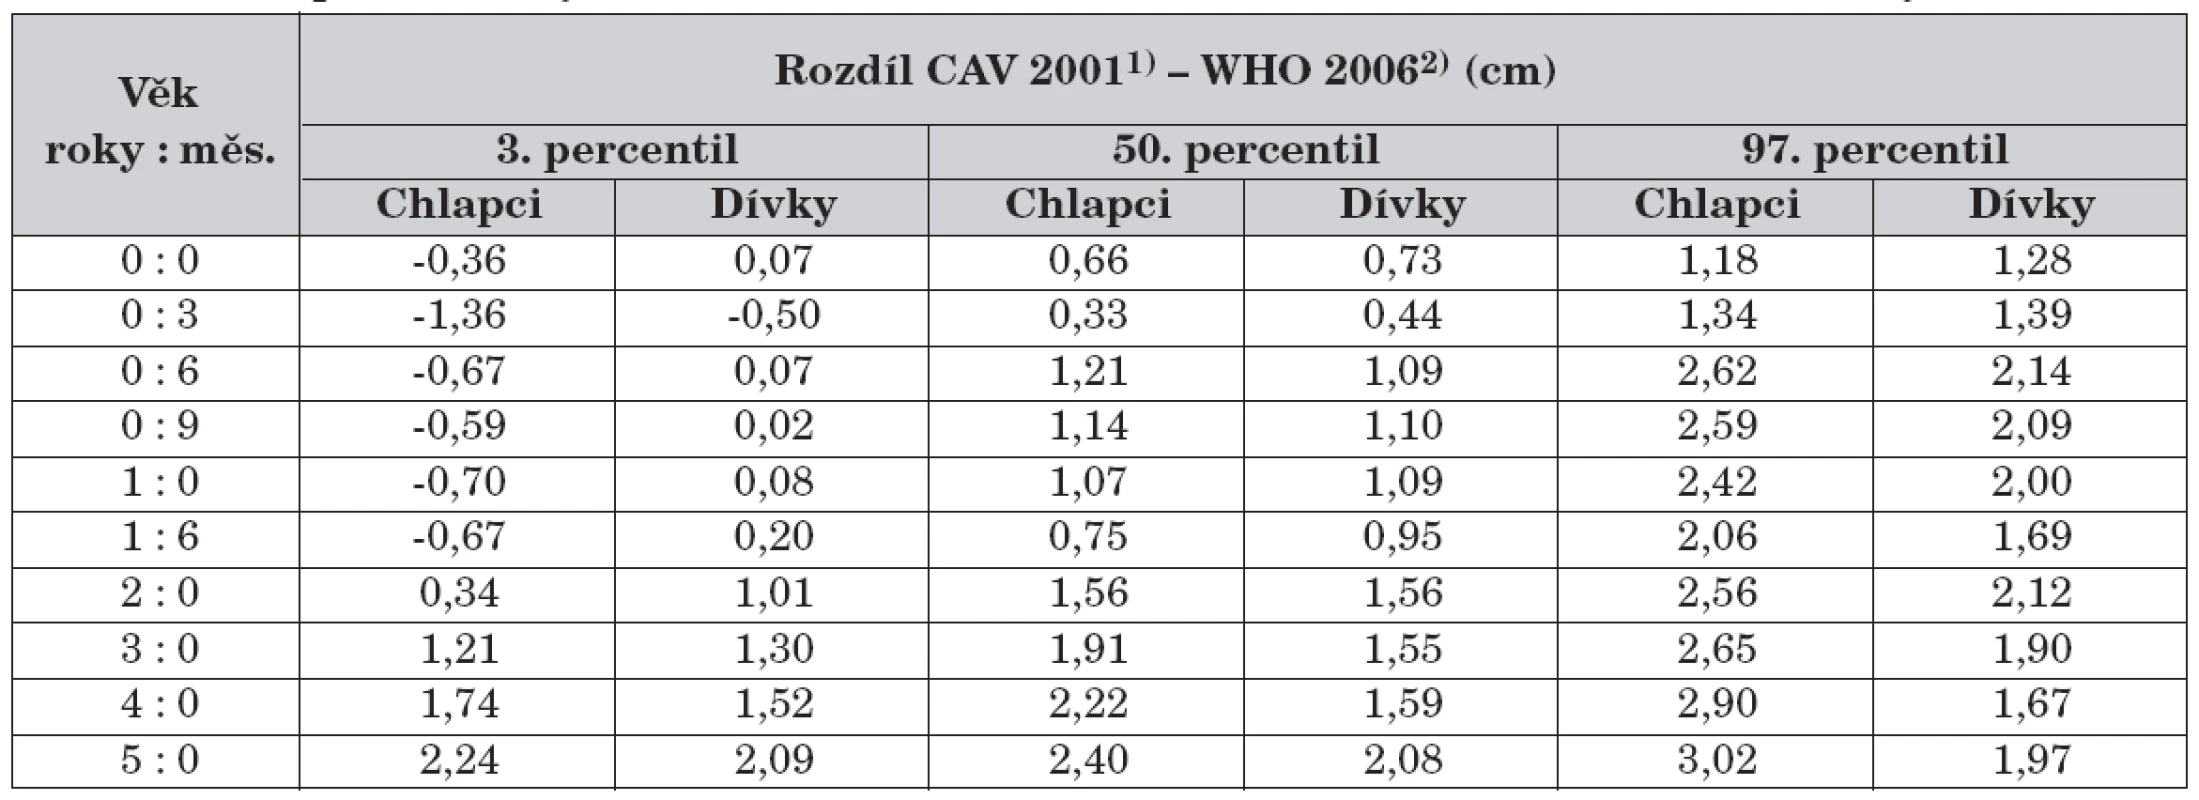 Rozdíl percentilových hodnot CAV 20011) a WHO 2006 2) – tělesná délka, tělesná výška.